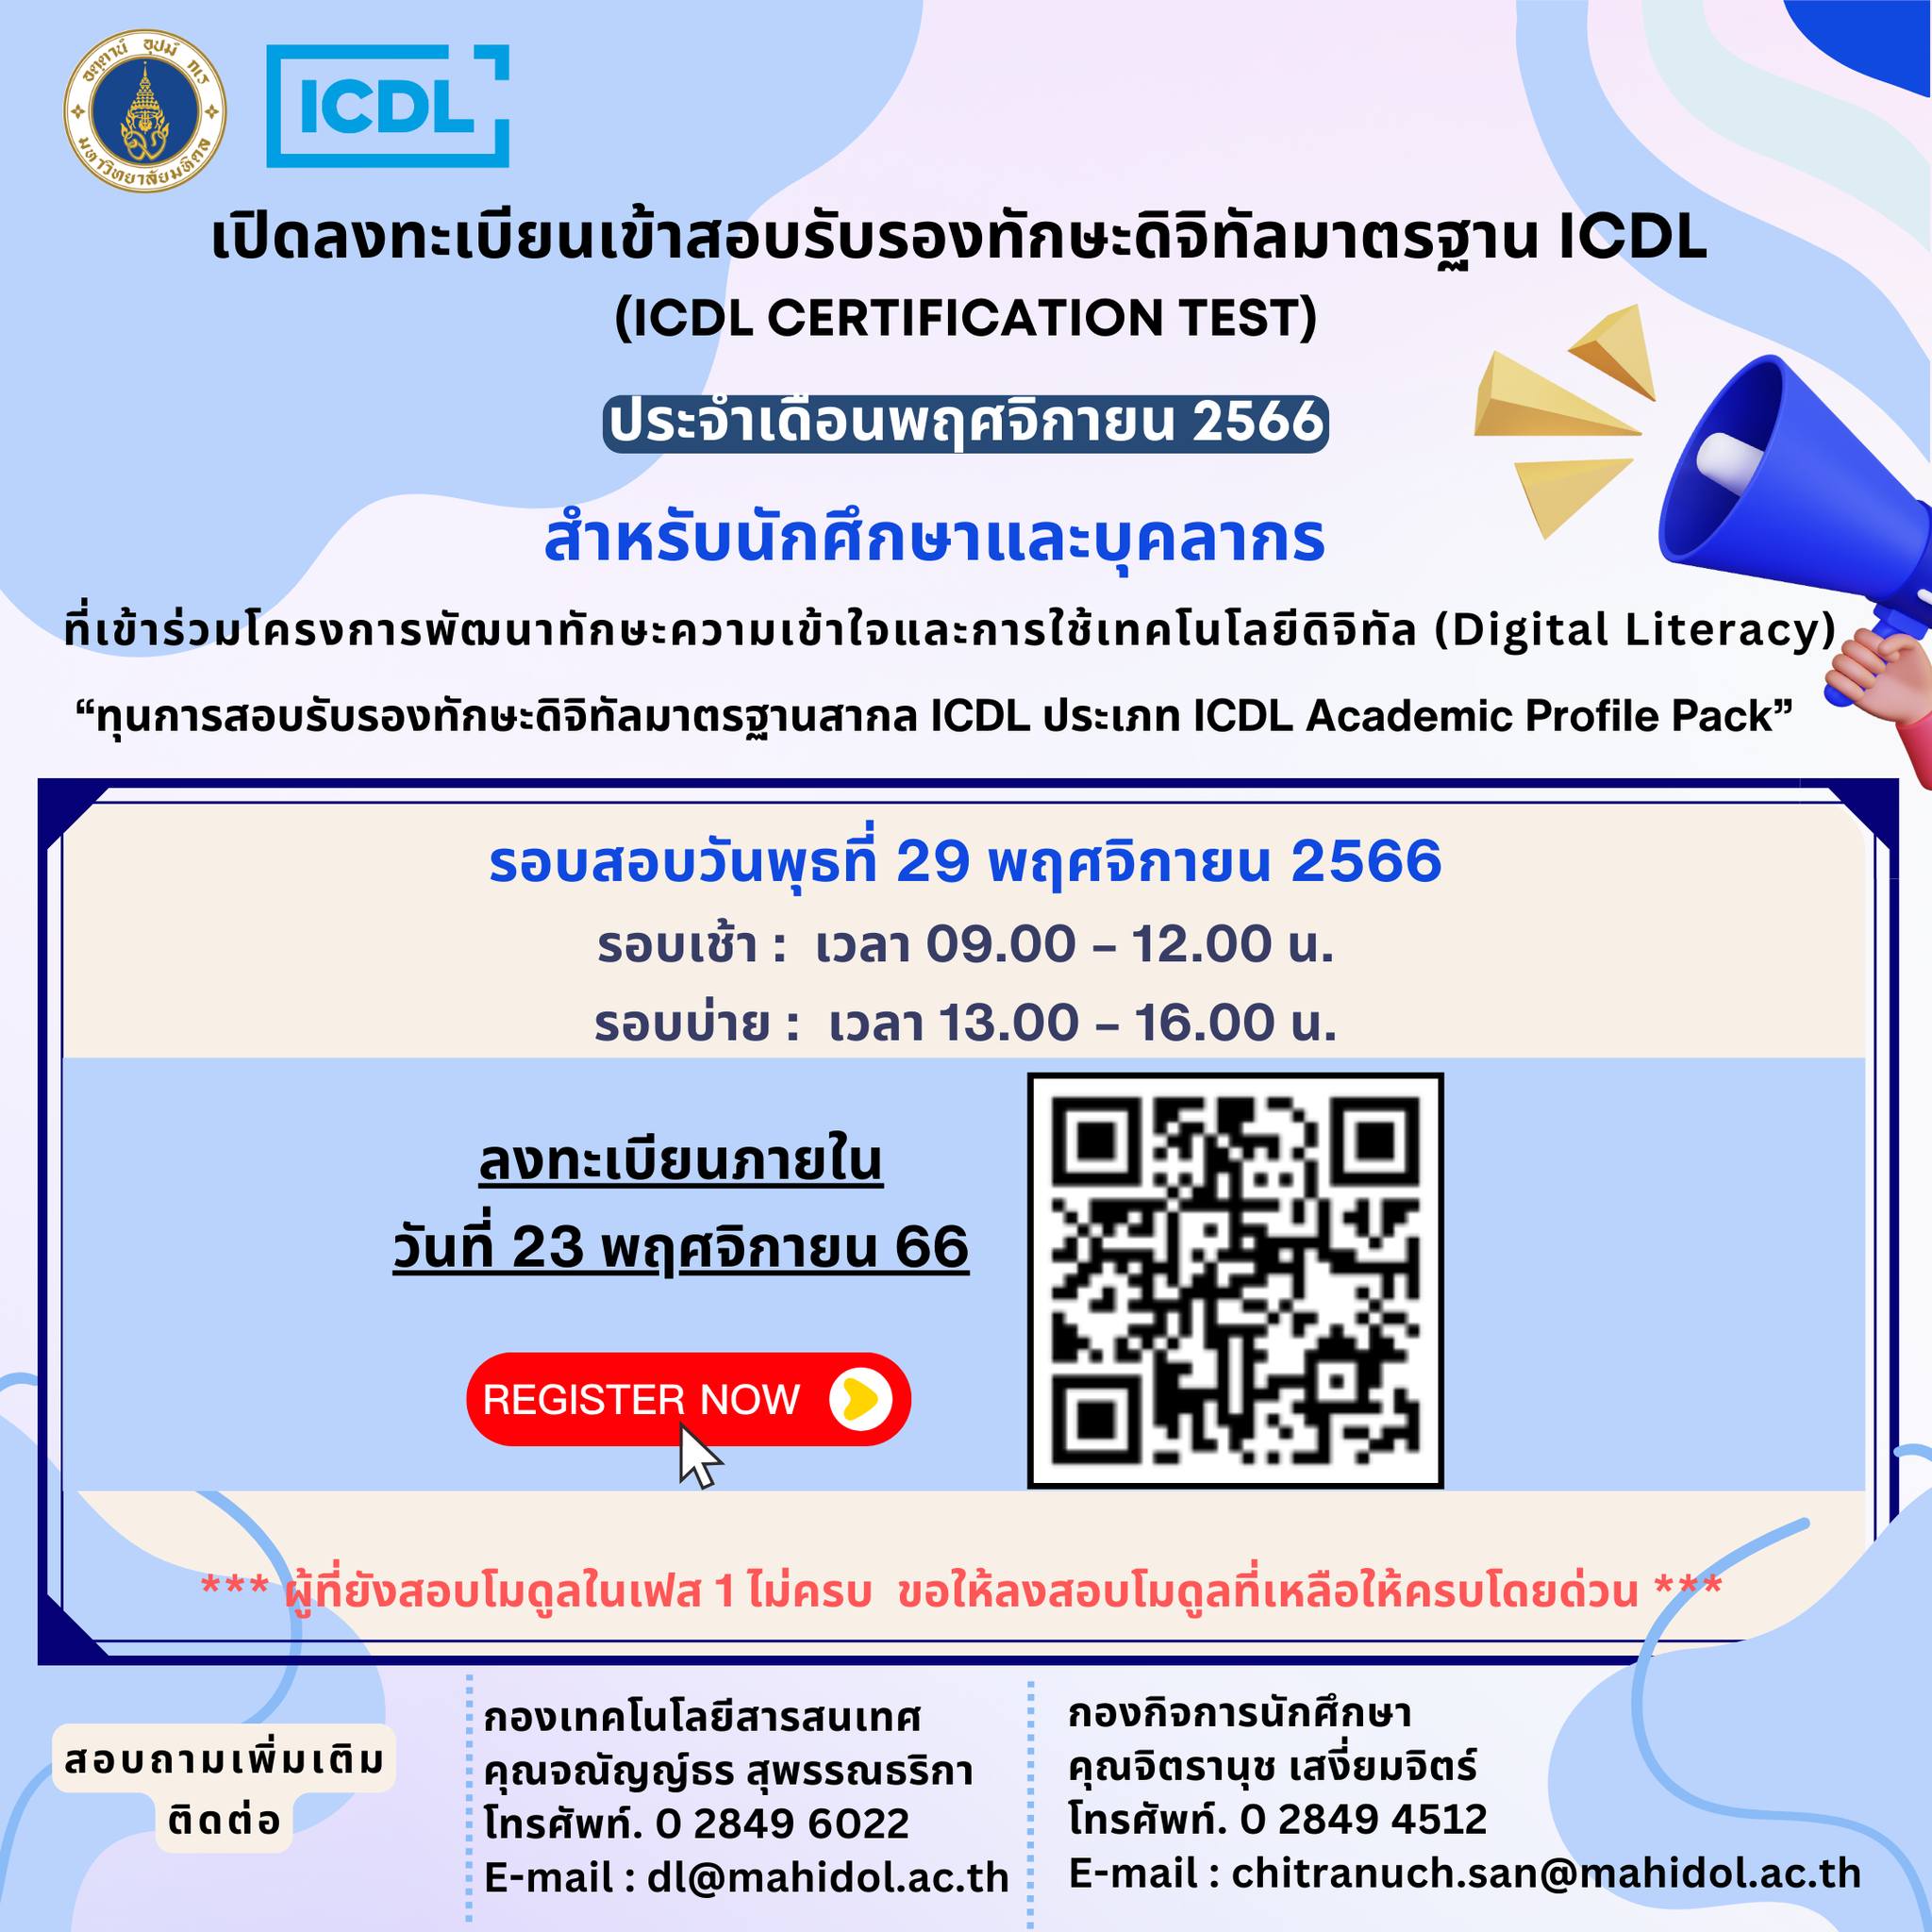 เปิดลงทะเบียนเข้าสอบรับรองทักษะดิจิทัลมาตรฐาน ICDL (ICDL Certification Test) ประจำเดือนพฤศจิกายน 2566